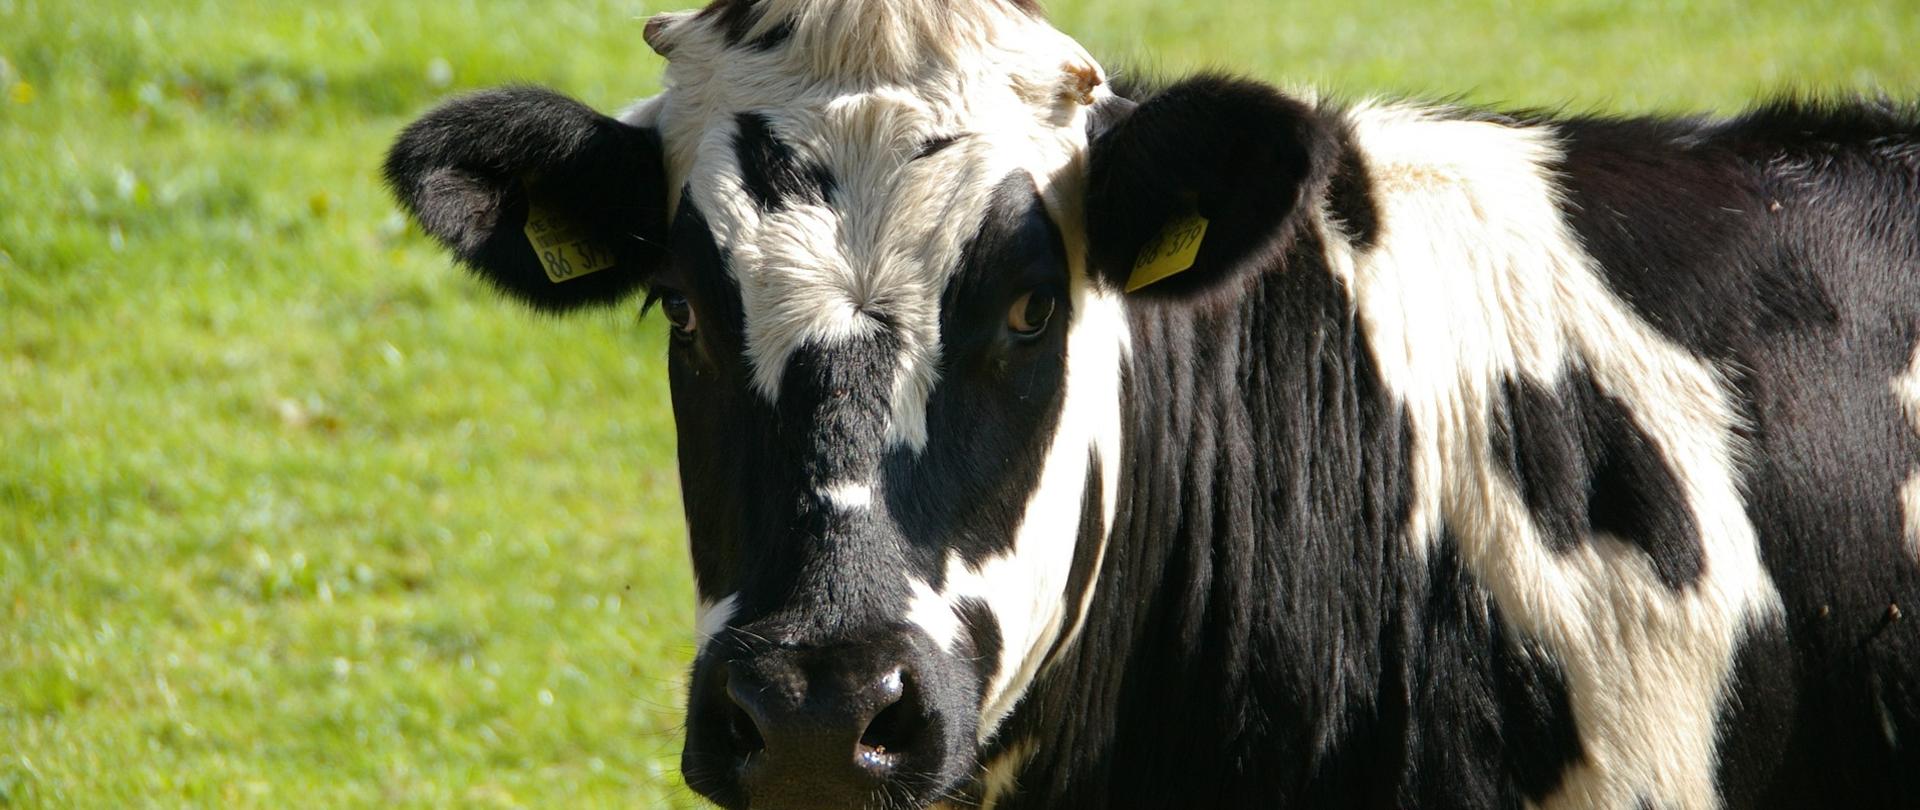 Krowa stoi za ogrodzeniem na pastwisku.